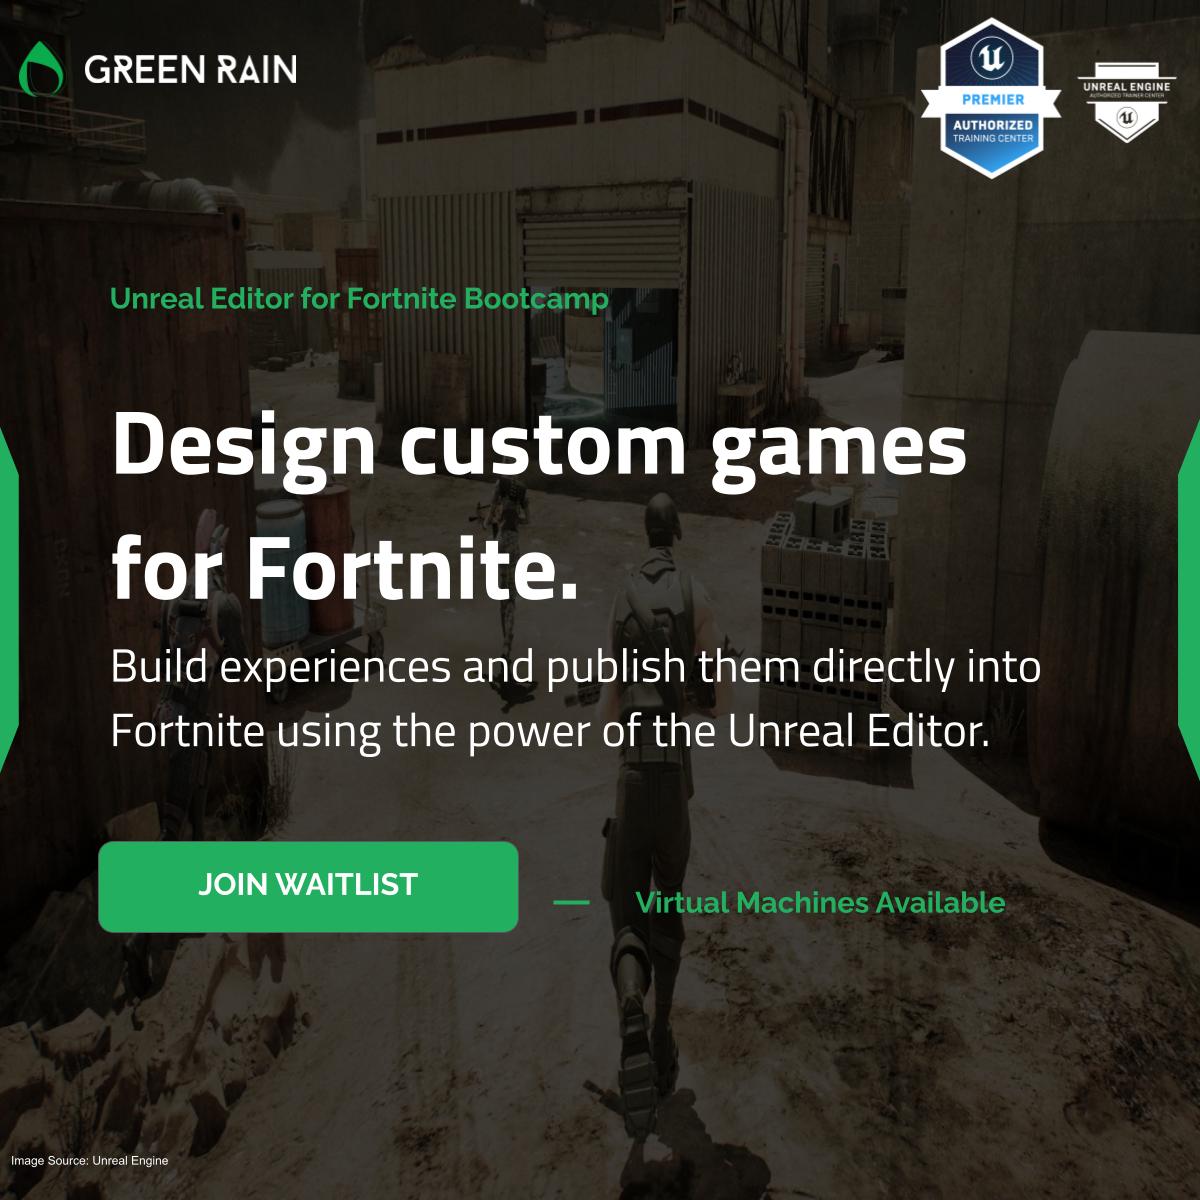 Design Custom Games For Fortnite Image